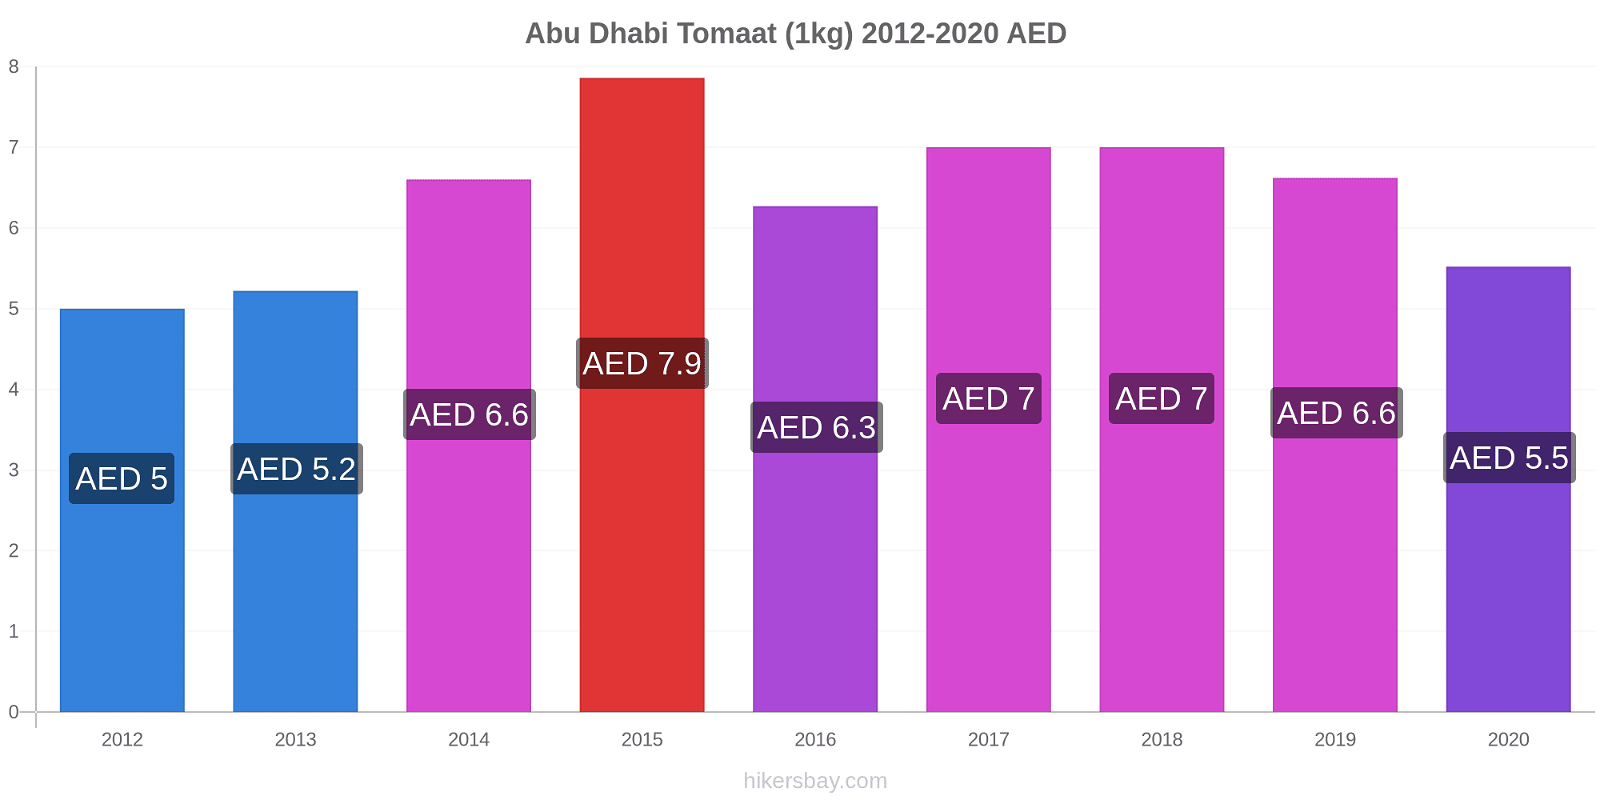 Abu Dhabi prijswijzigingen Tomaat (1kg) hikersbay.com